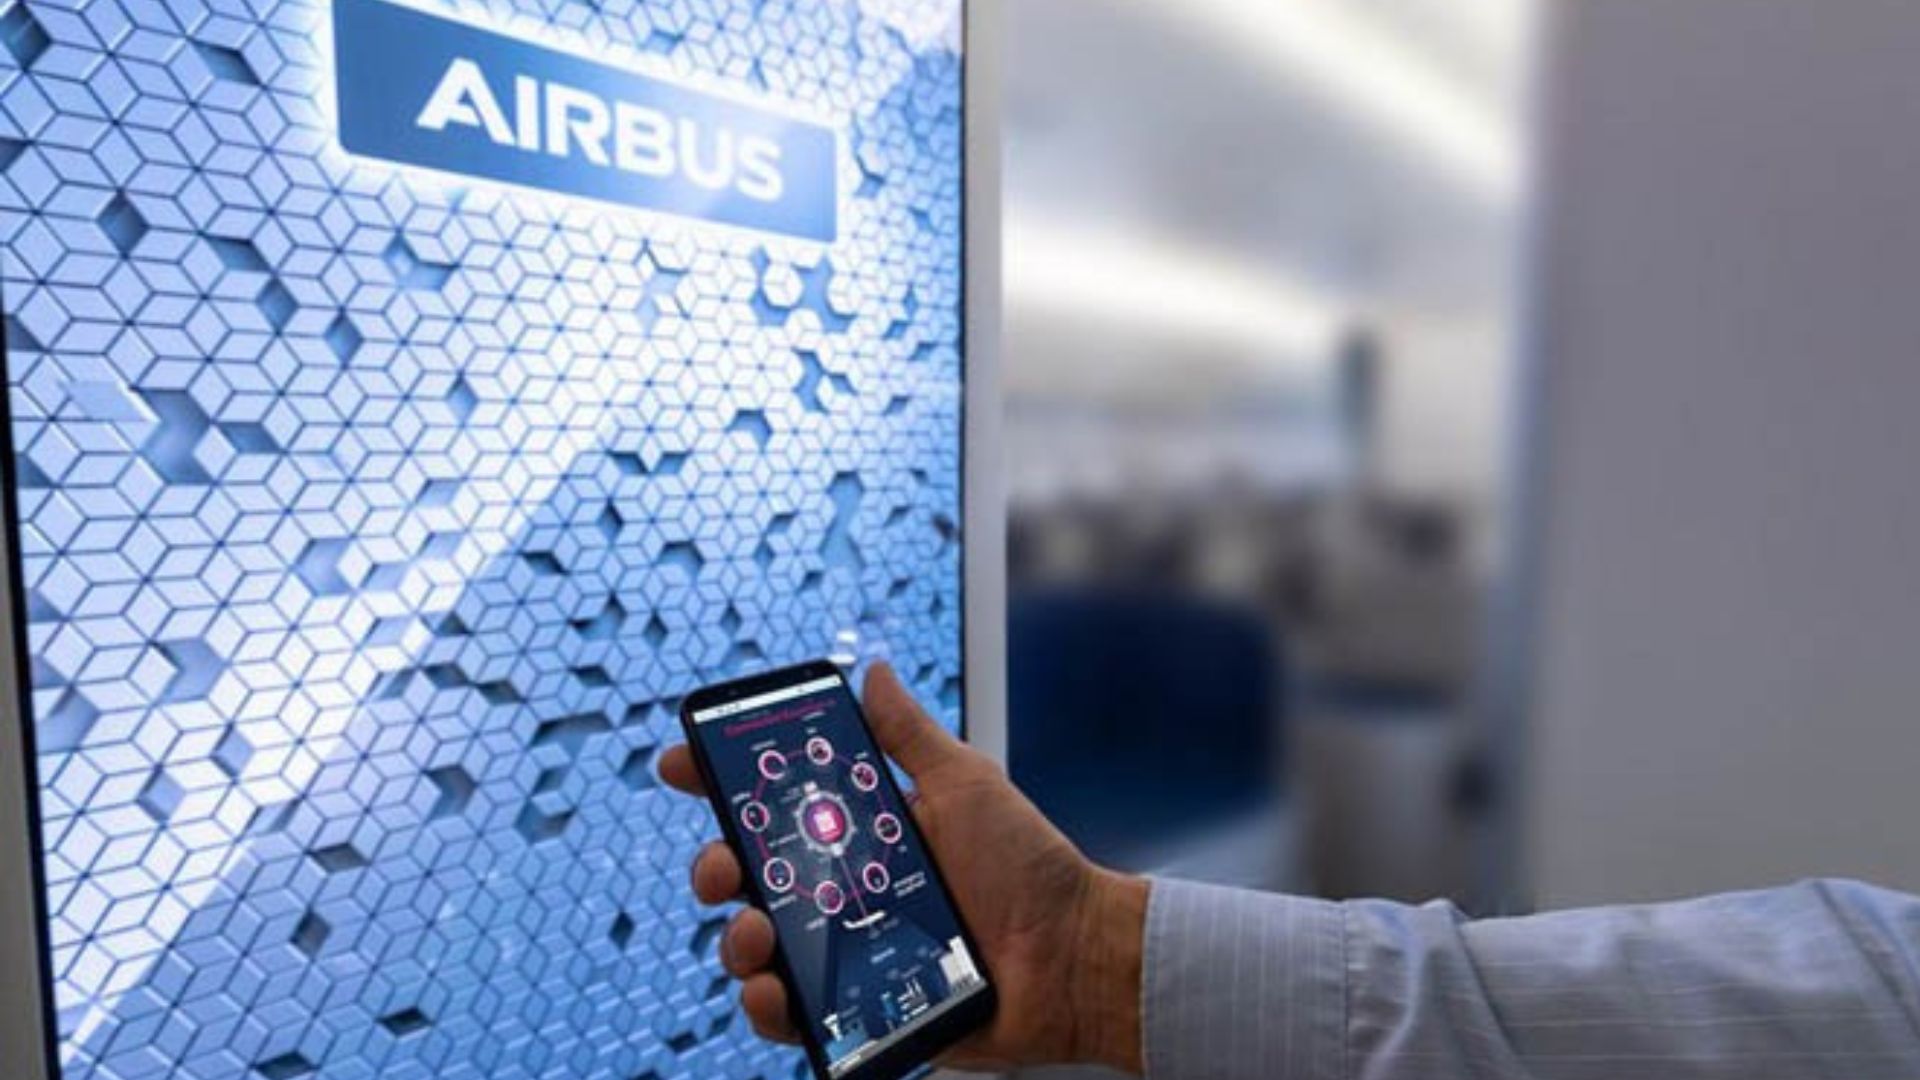 Berhasil Uji Coba Kabin Pesawat Airbus Teknologi IoT